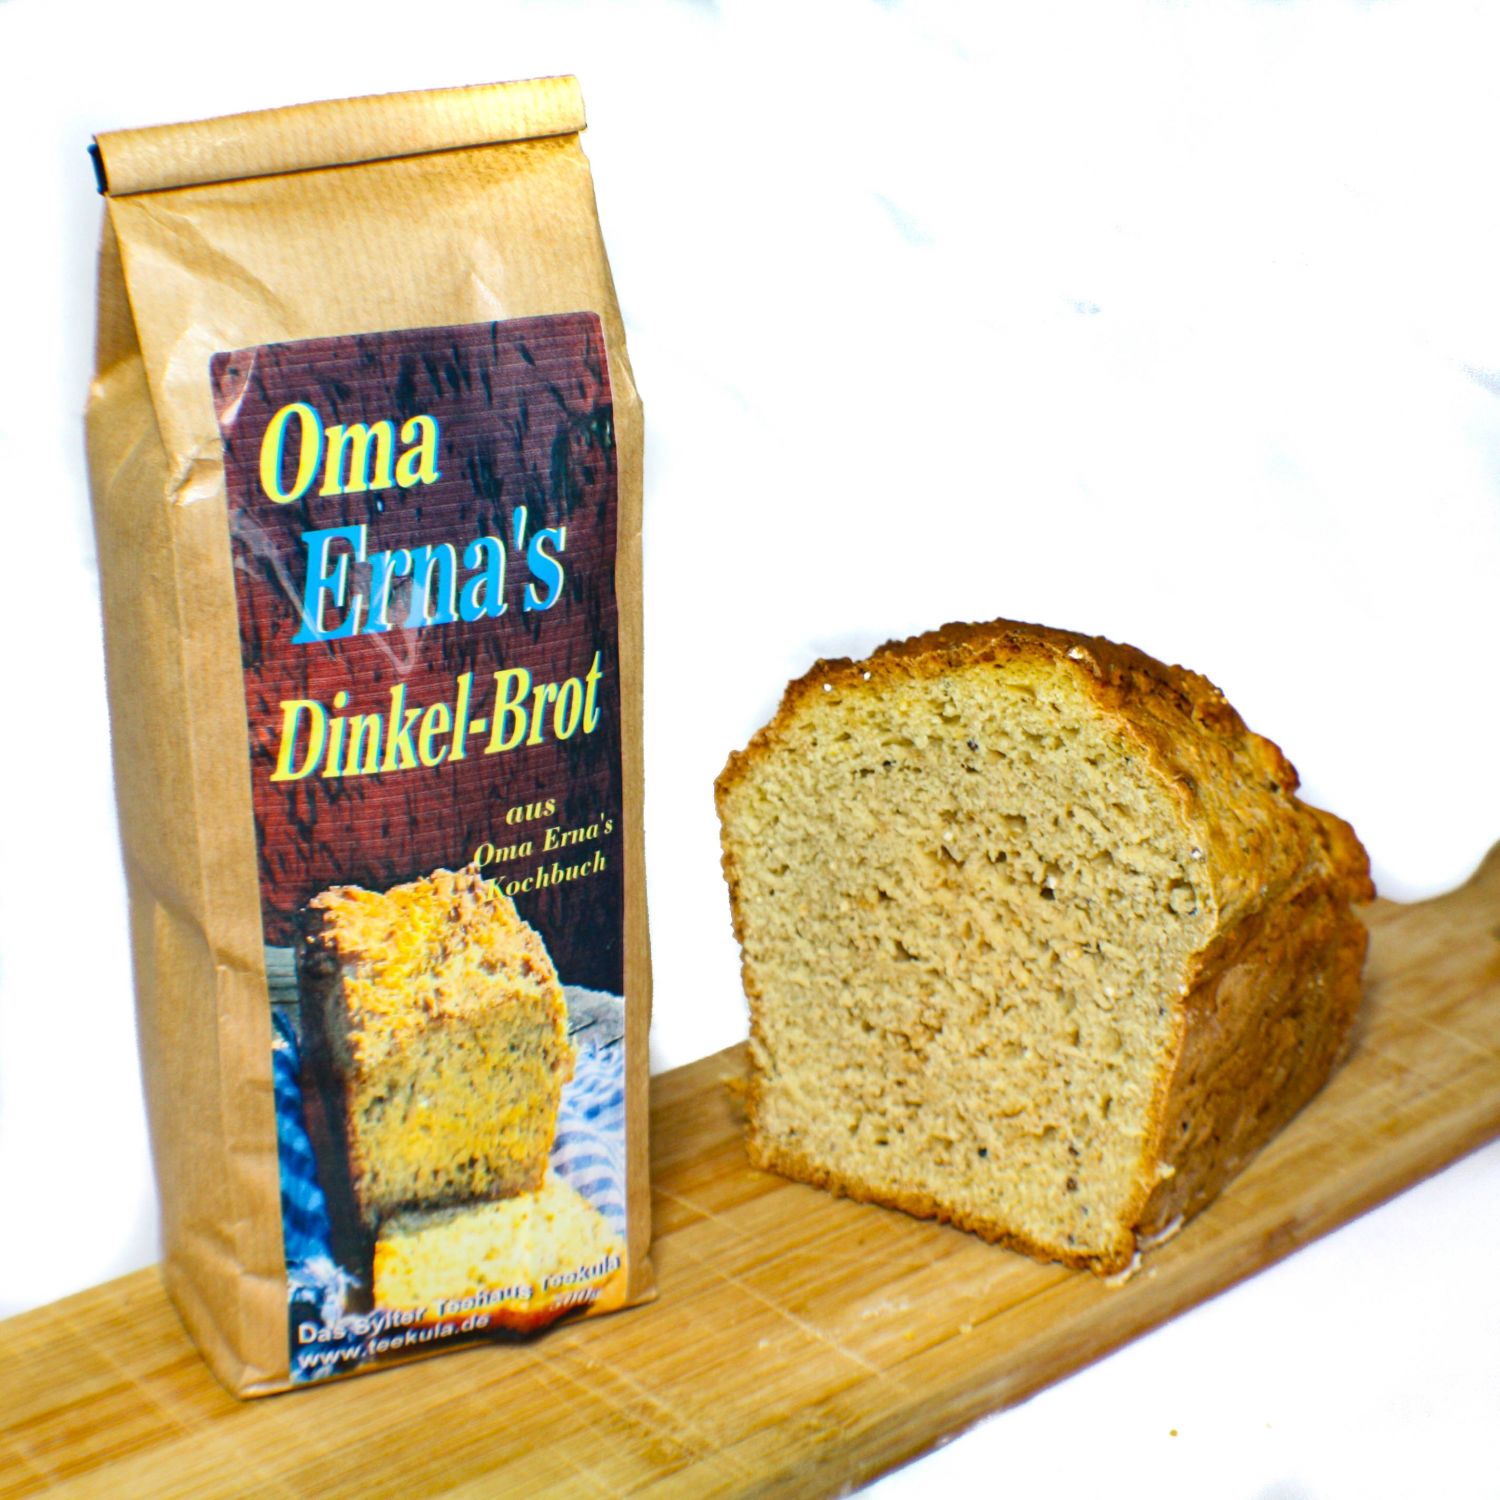 Oma Erna's Dinkel-Brot